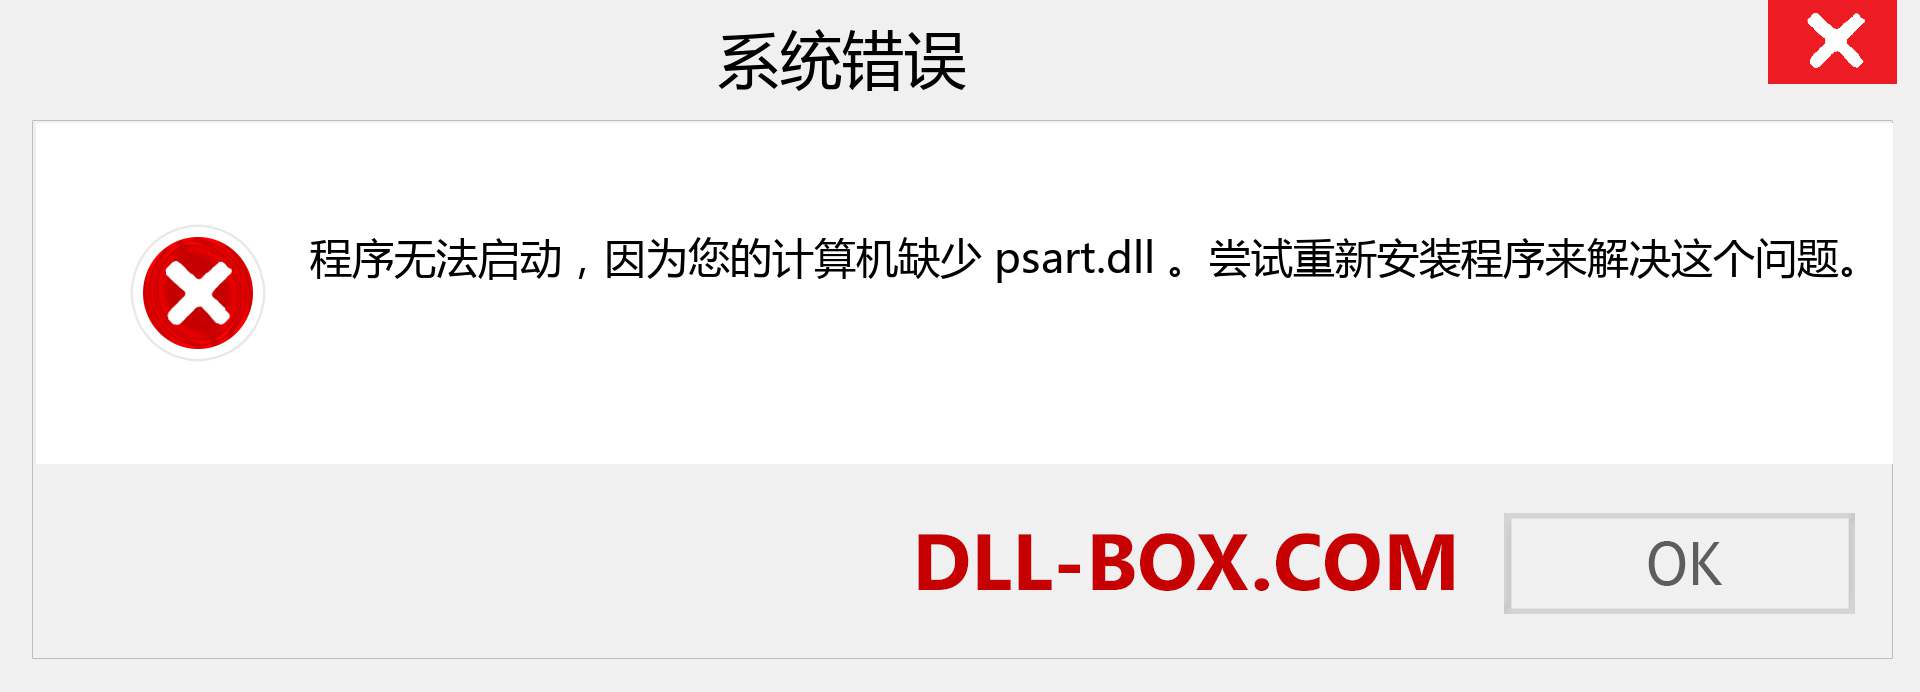 psart.dll 文件丢失？。 适用于 Windows 7、8、10 的下载 - 修复 Windows、照片、图像上的 psart dll 丢失错误